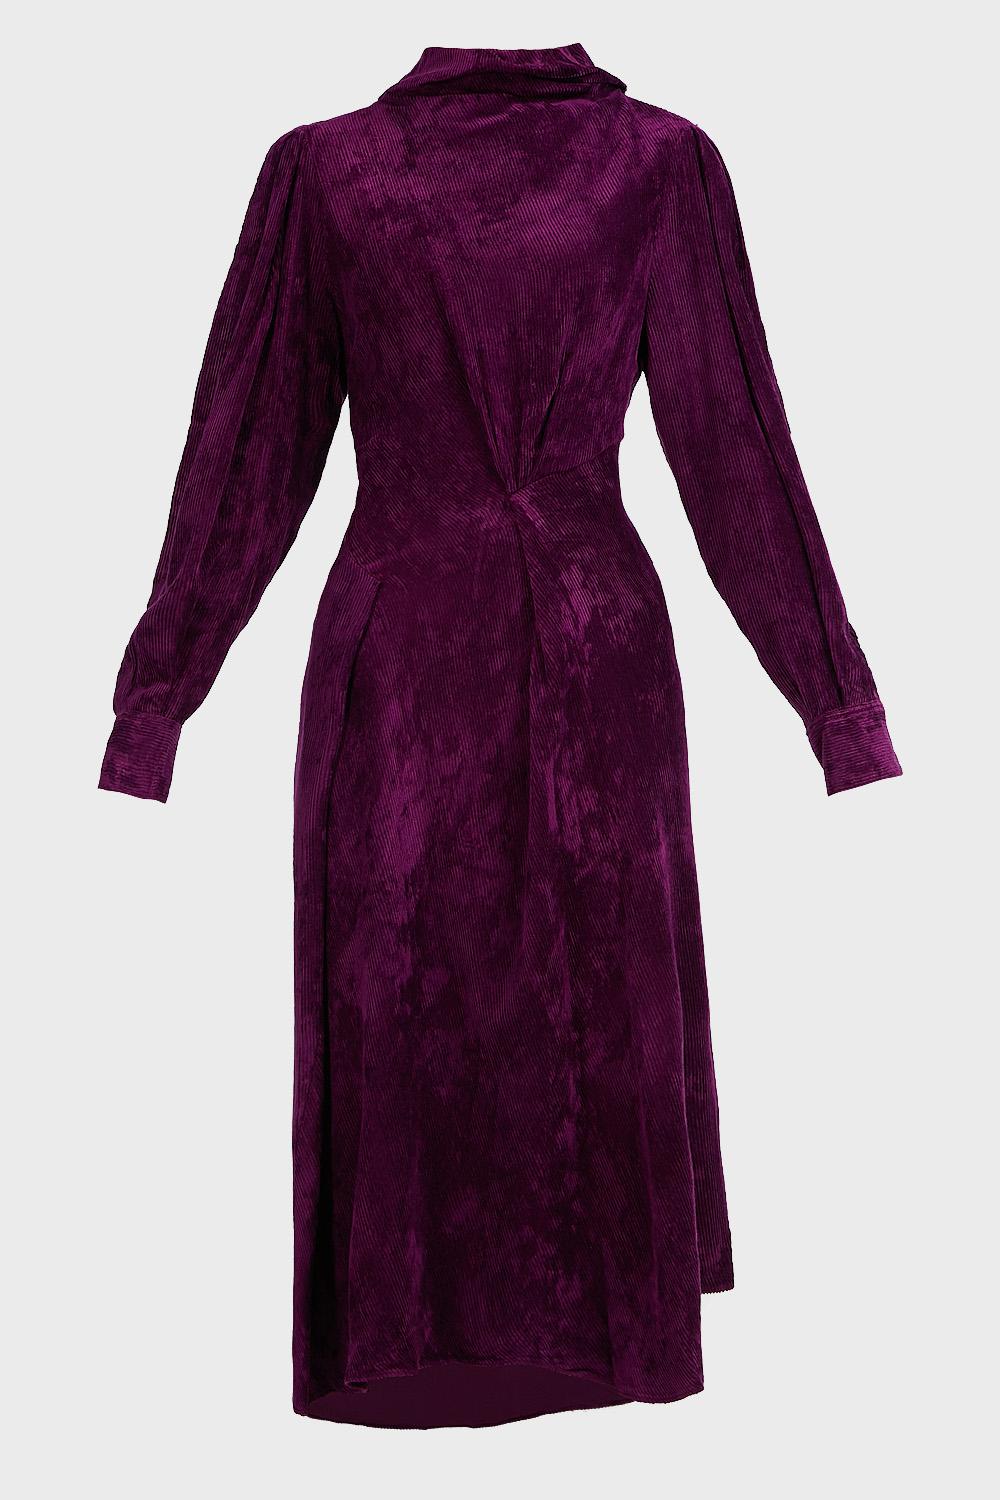 Isabel Marant Fergus High Neck Velvet Dress in Purple - Lyst